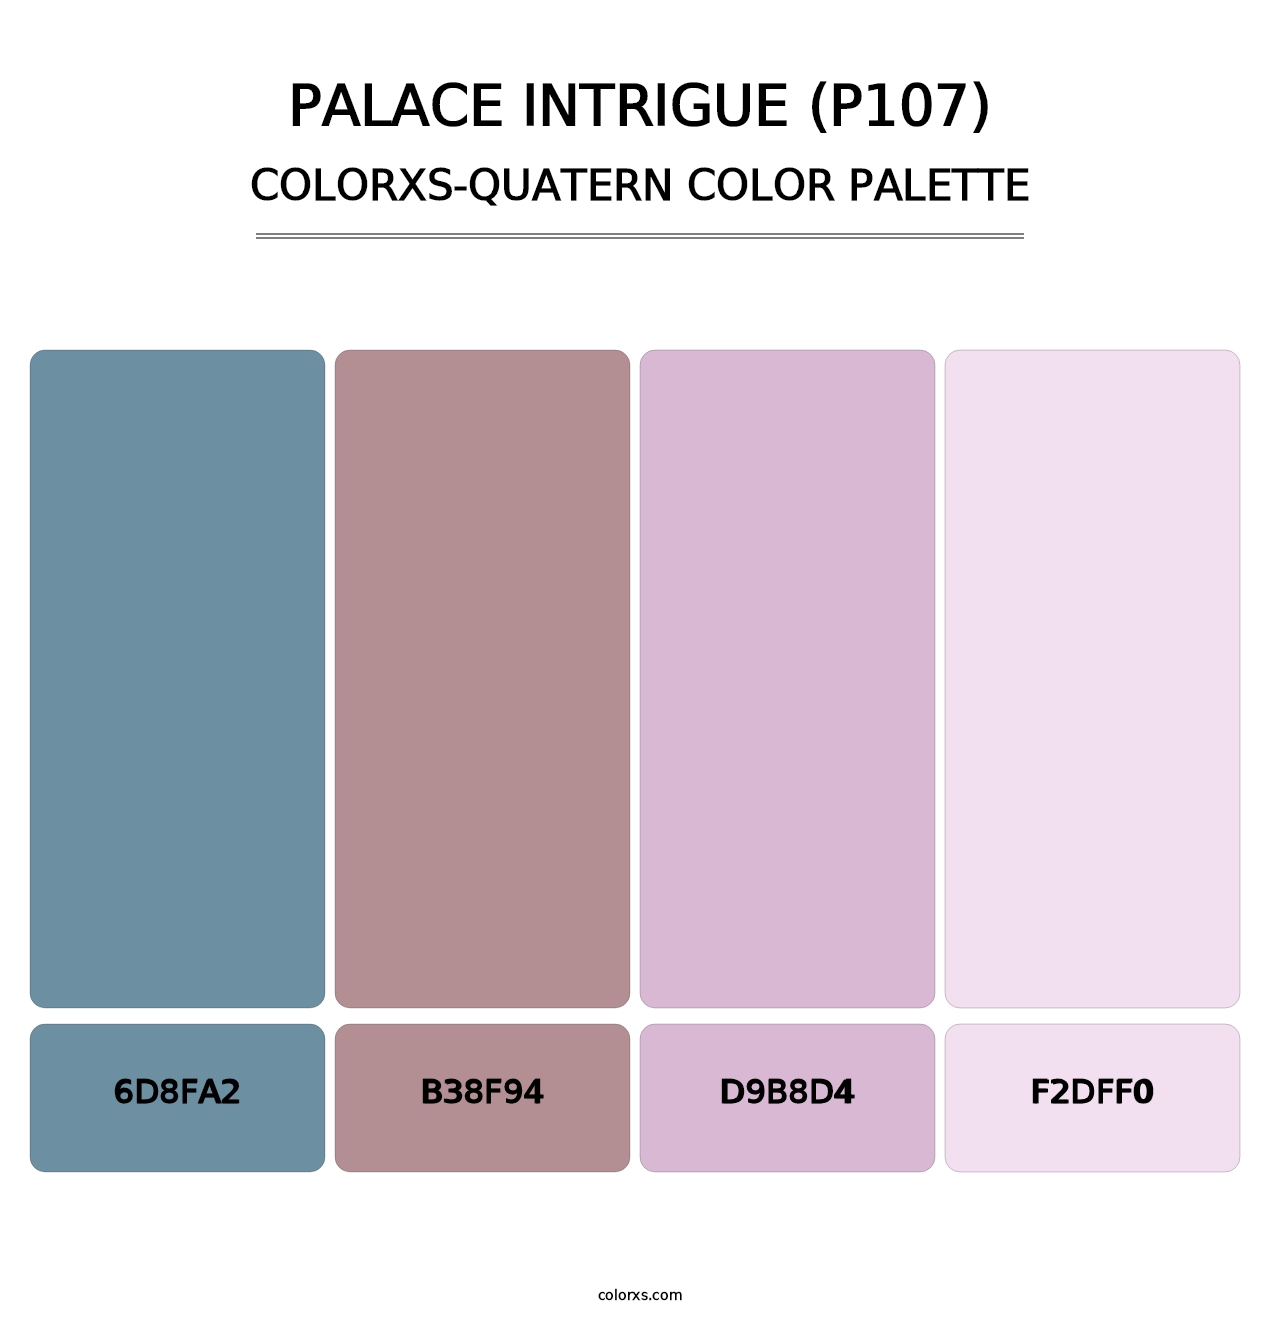 Palace Intrigue (P107) - Colorxs Quatern Palette